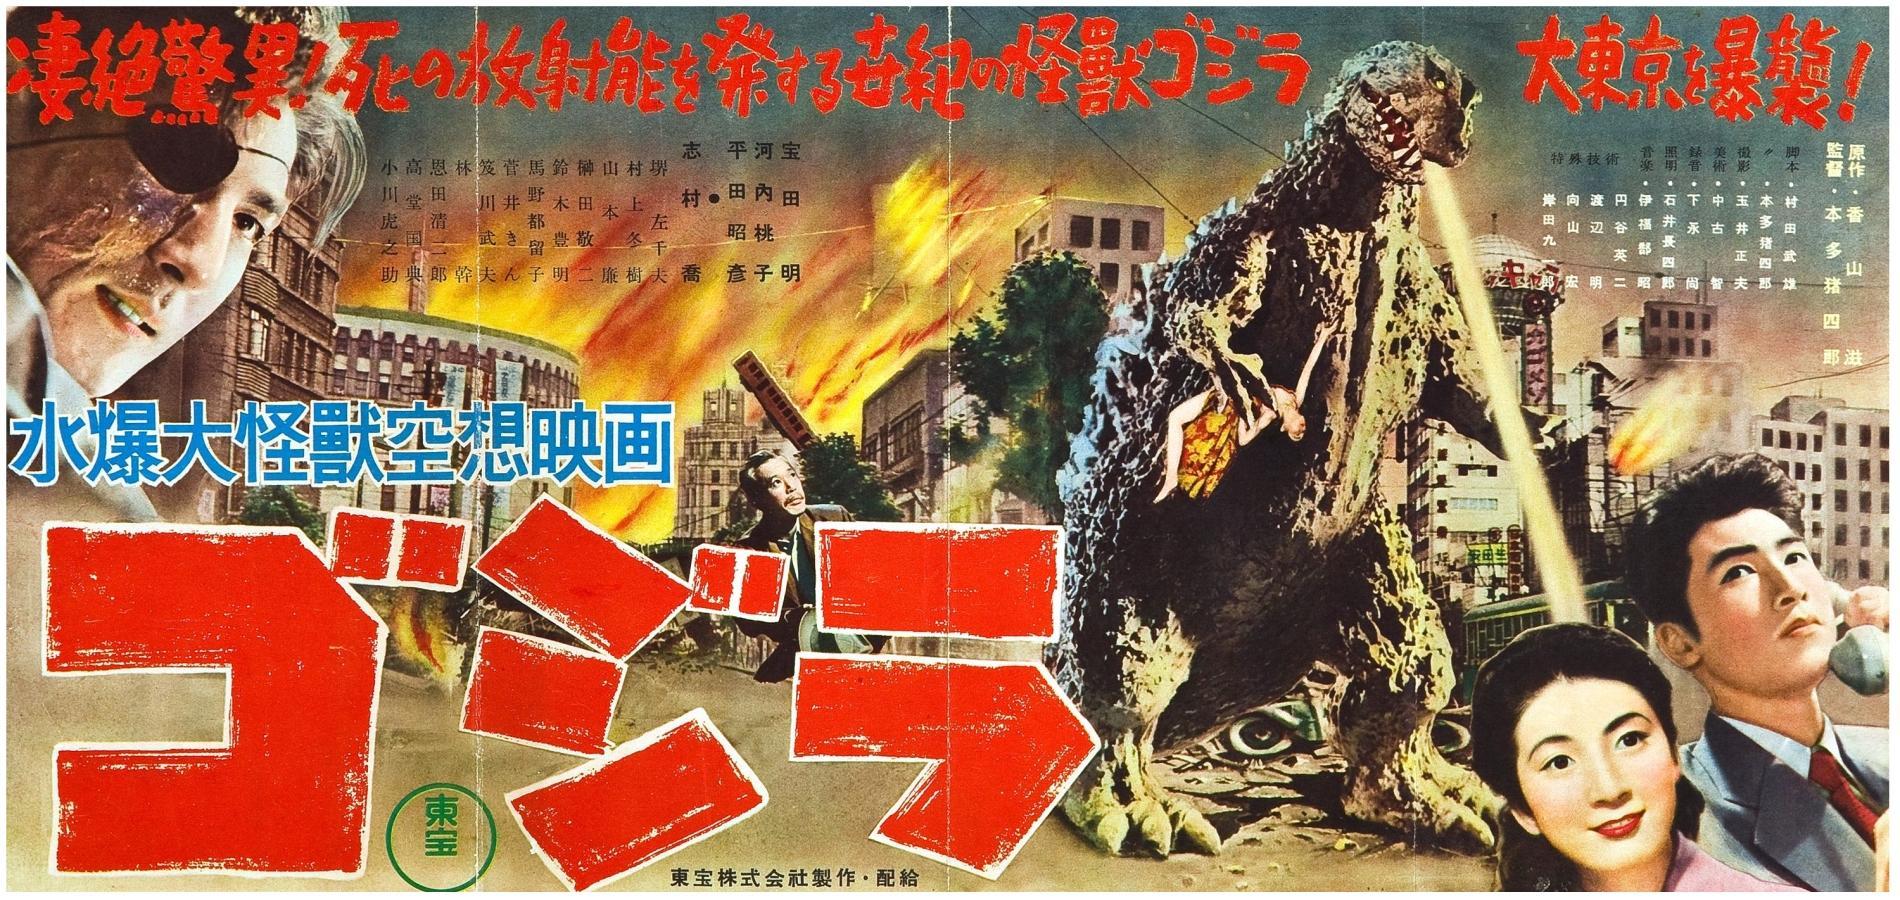 Godzilla, Japón bajo el terror del monstruo foto